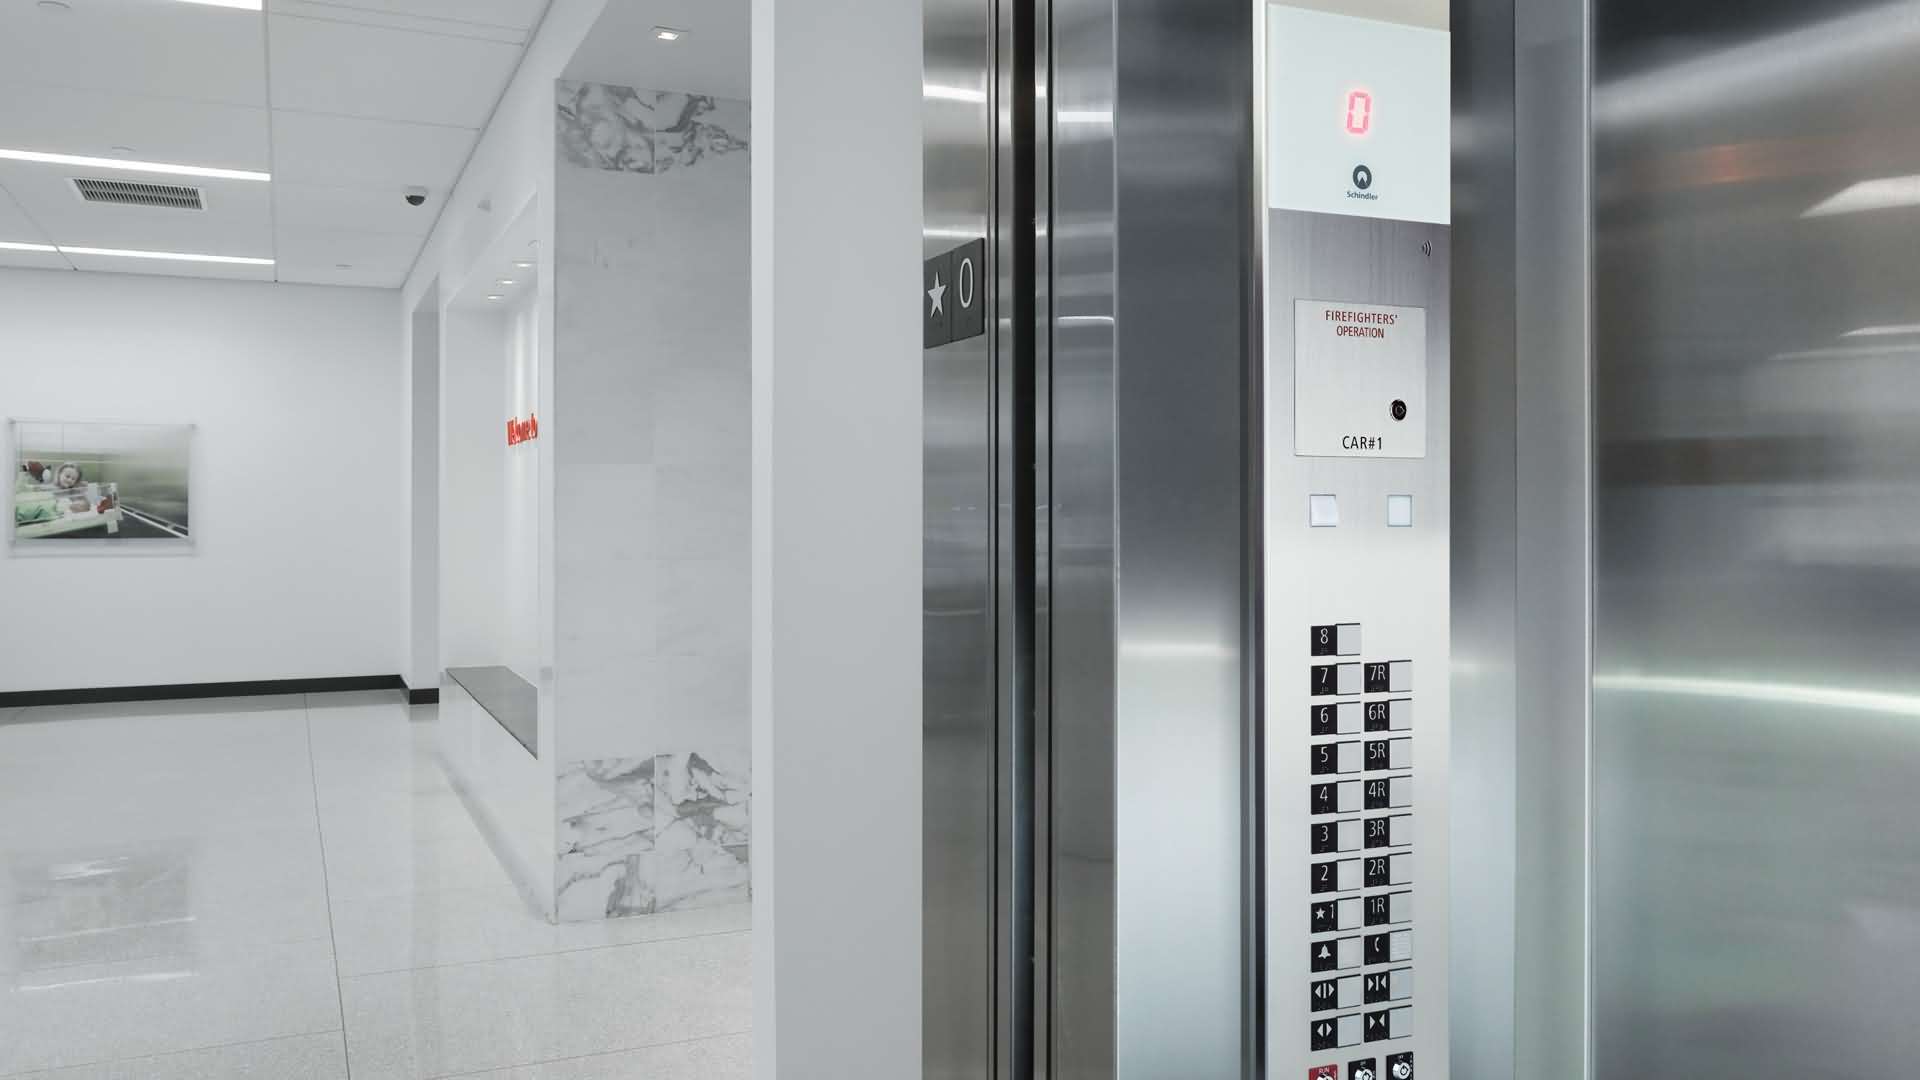 قوانین جدید استاندارد آسانسور